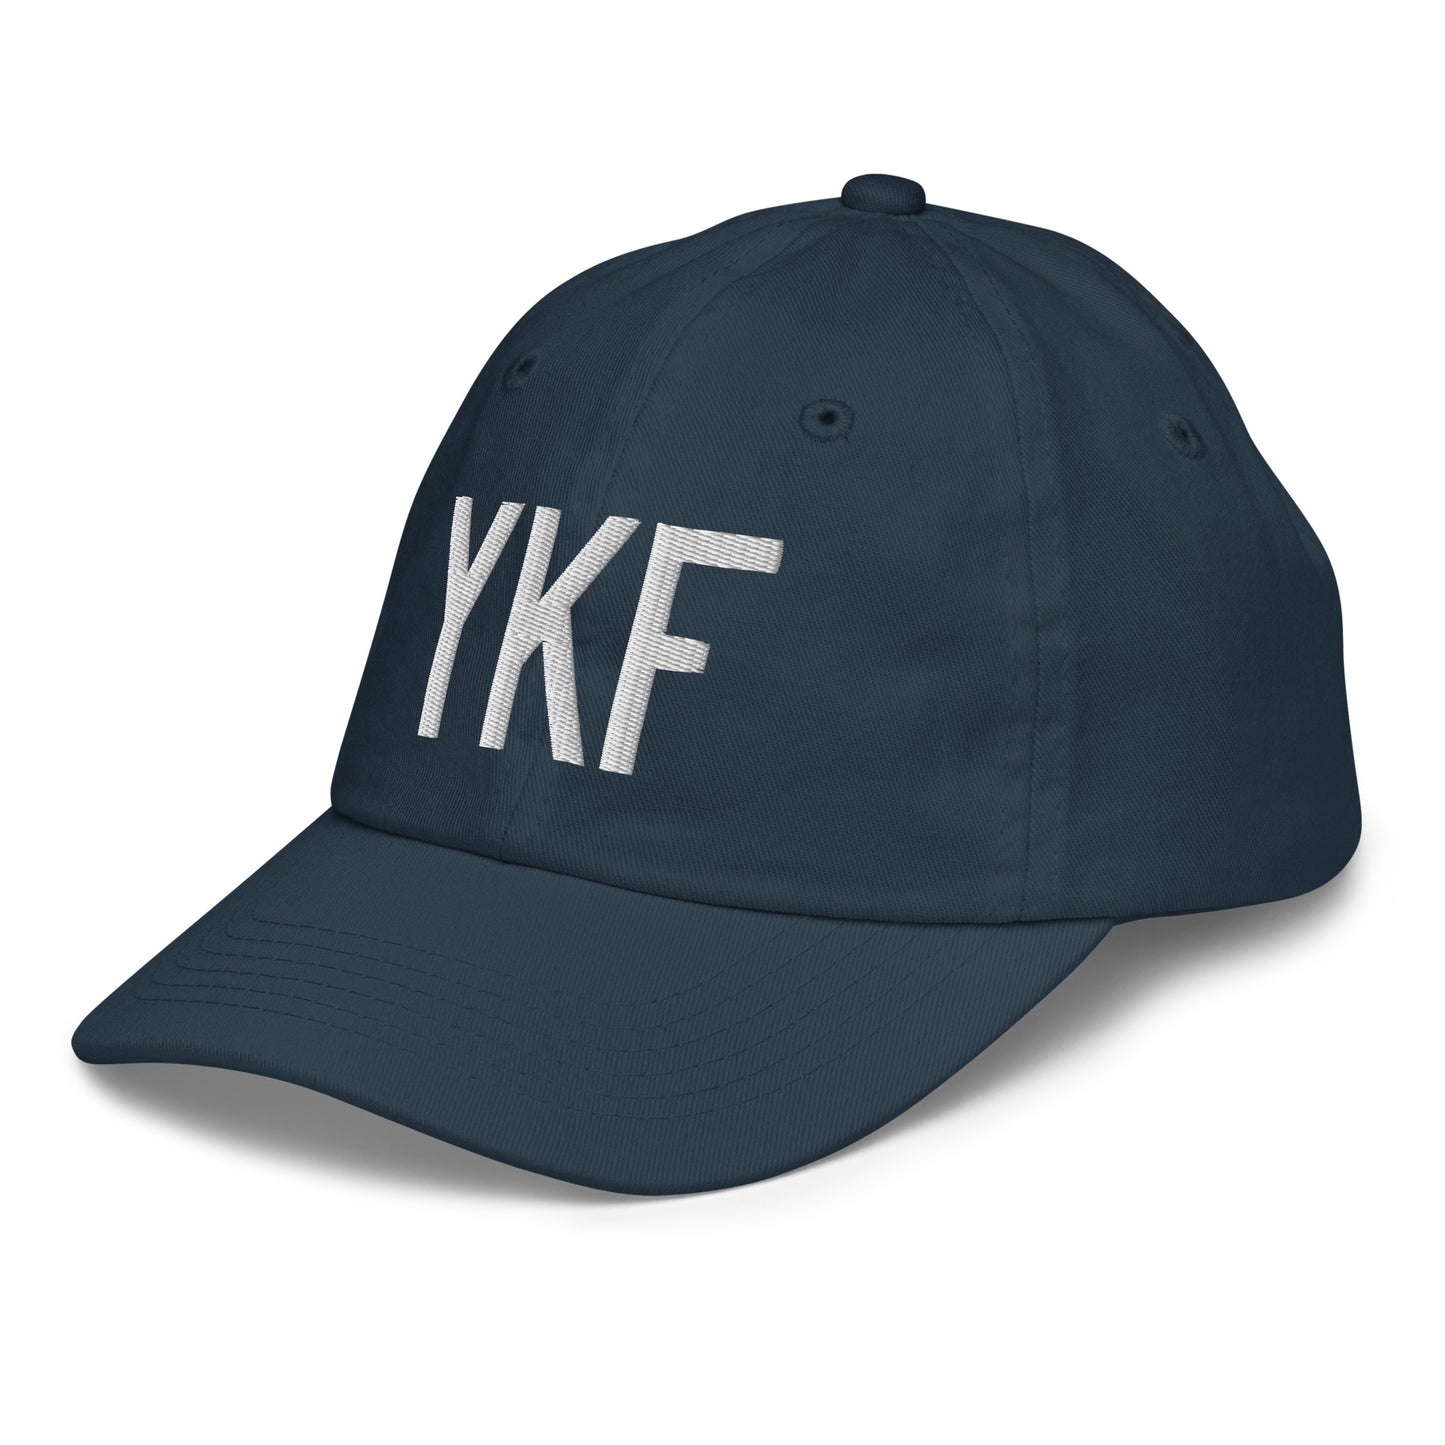 Airport Code Kid's Baseball Cap - White • YKF Waterloo • YHM Designs - Image 16